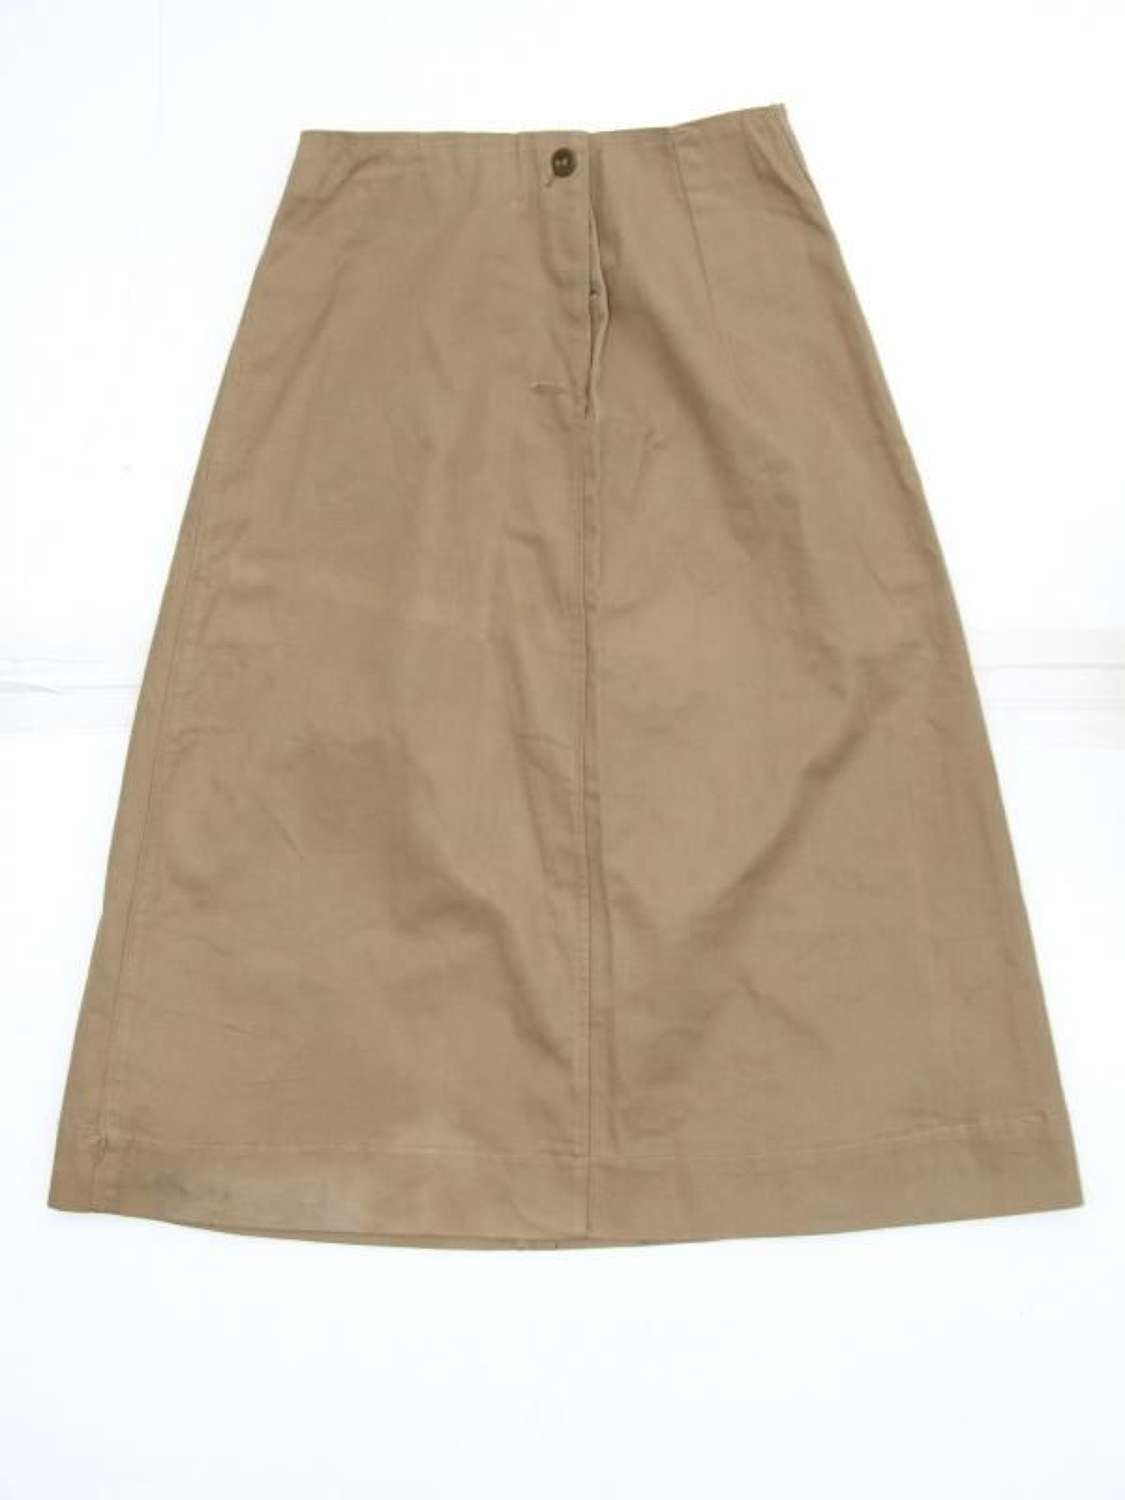 ATS KD Skirt 1944 Dated